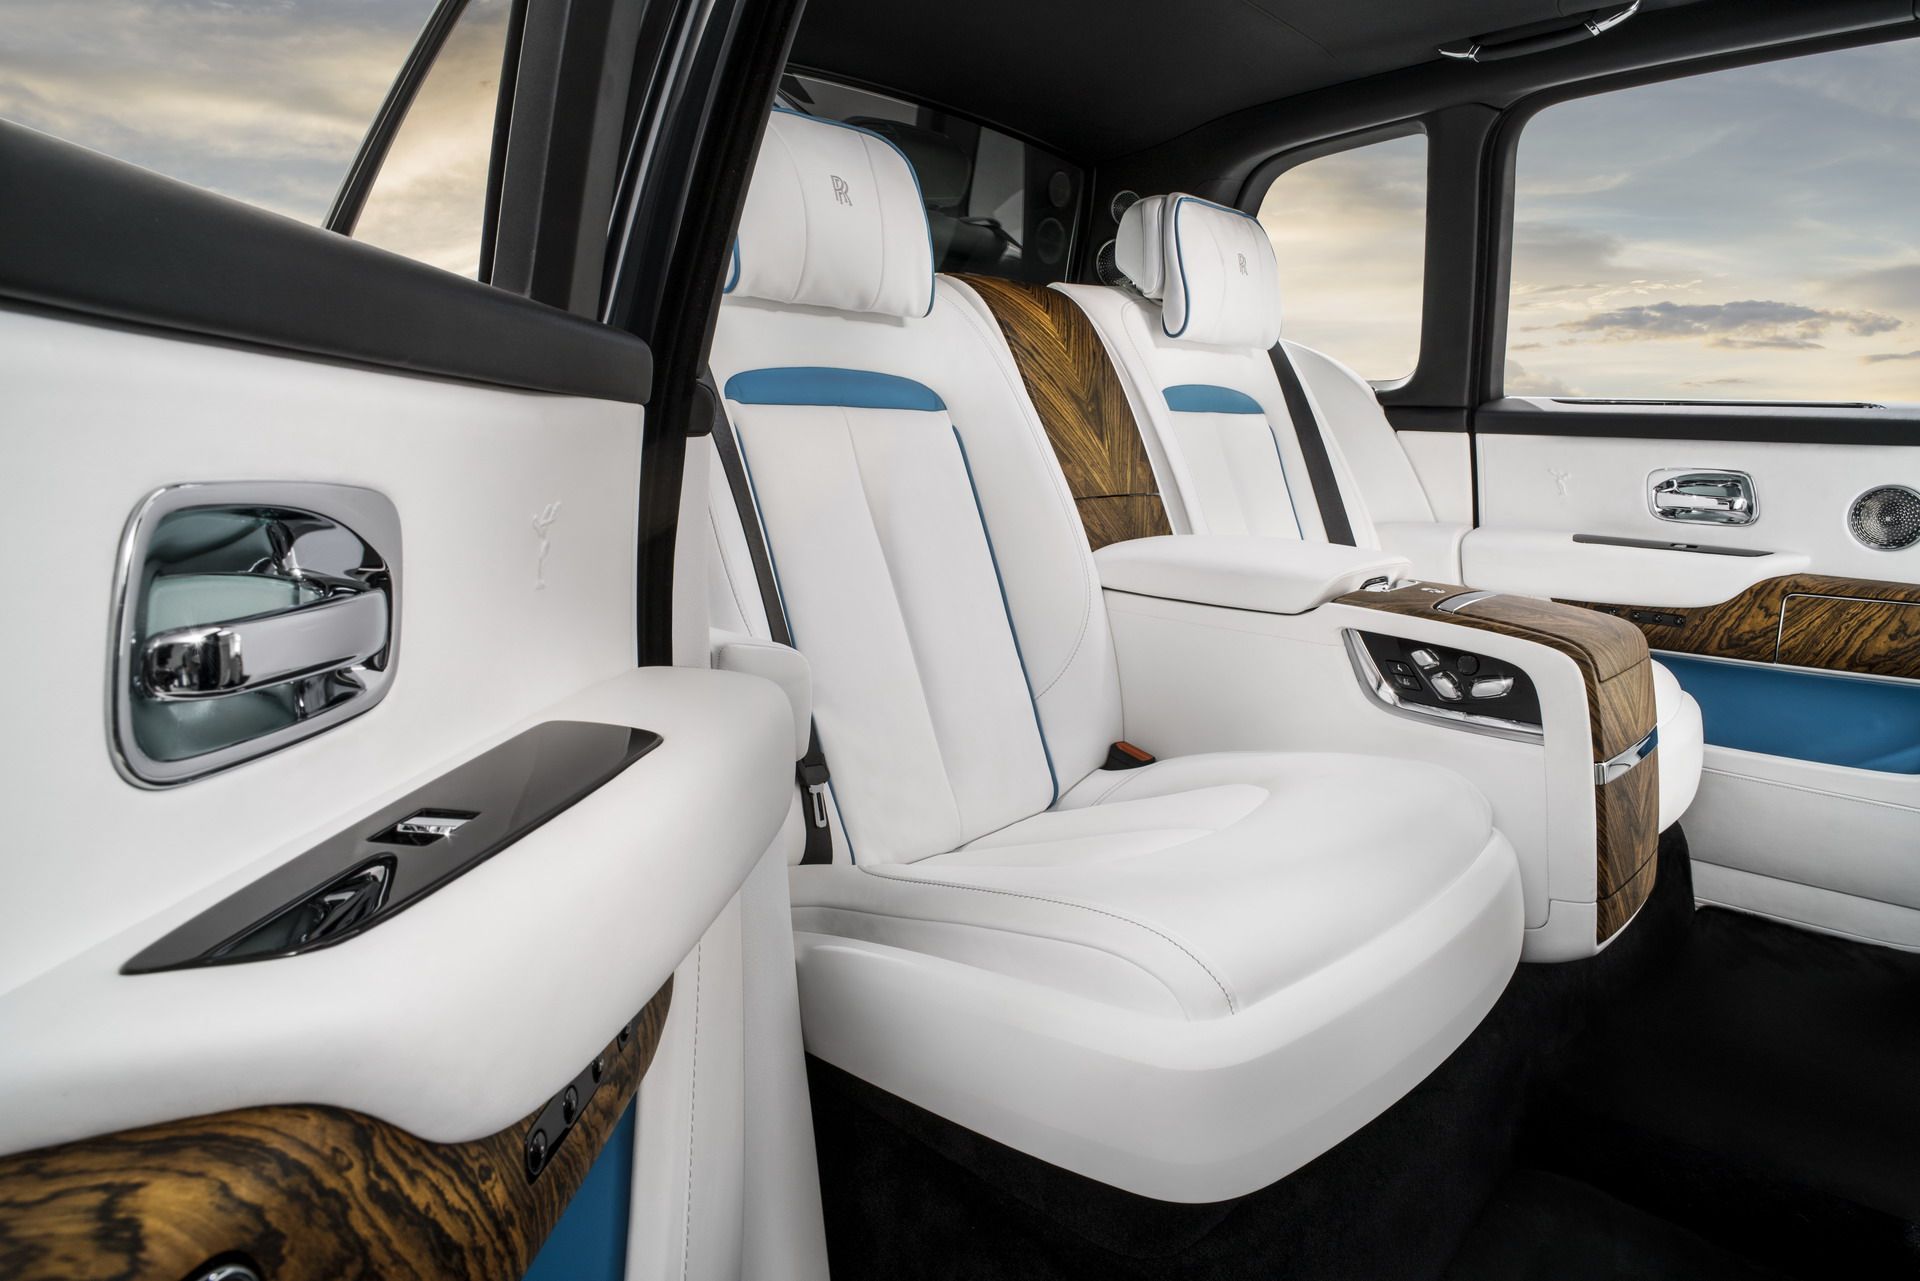 رولز رويس كولينان 2019 افخم SUV في العالم + اهم التقنيات والمواصفات 69